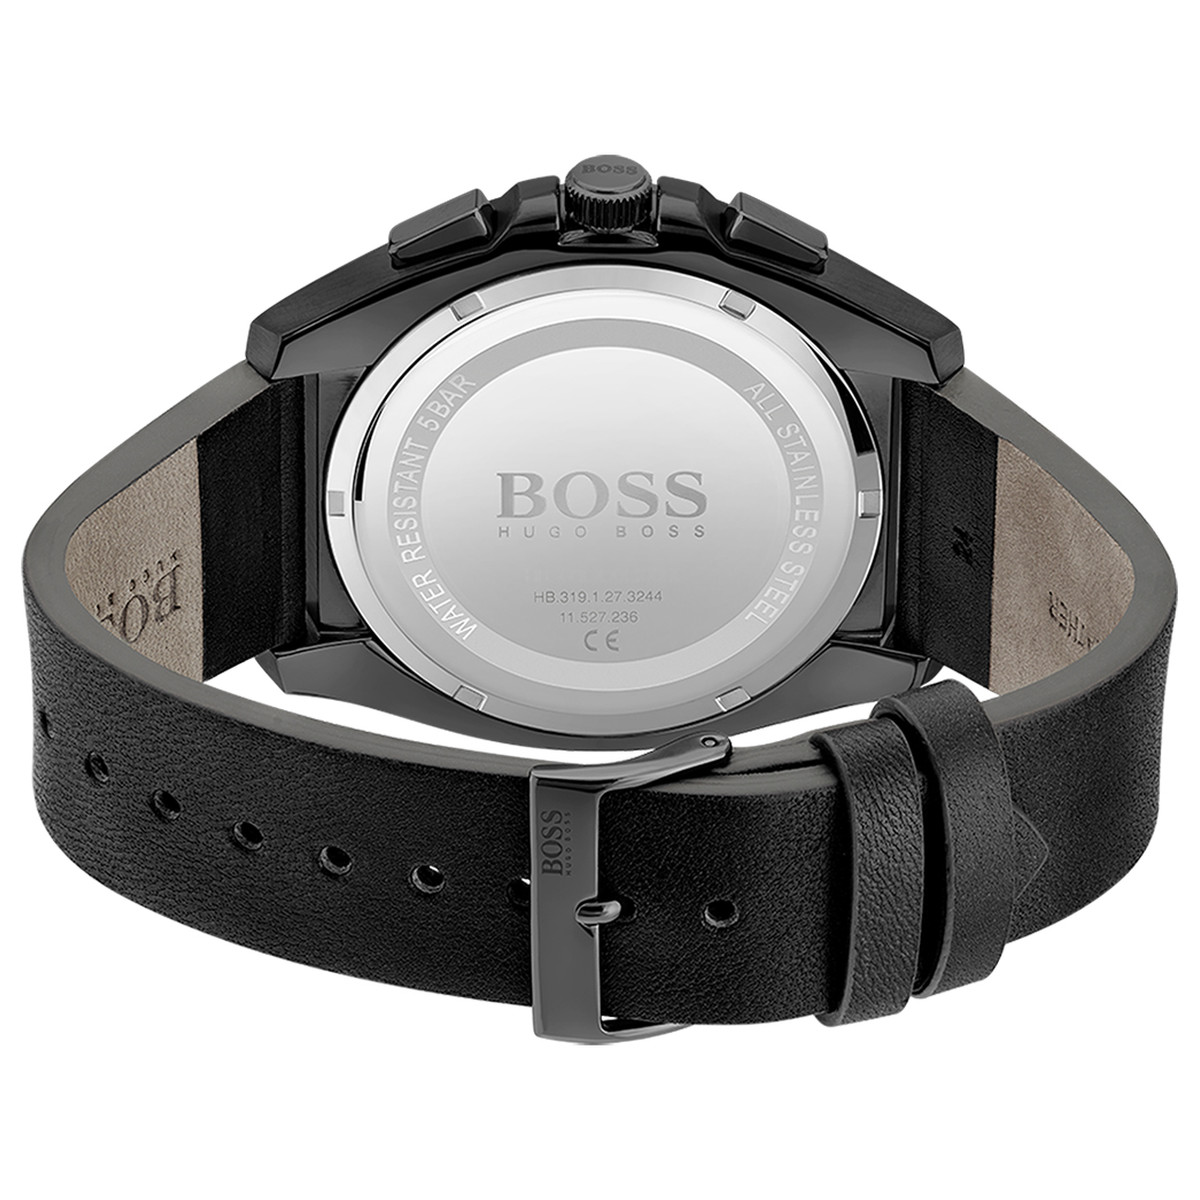 Montre Boss homme chronographe acier bracelet cuir noir - vue 3